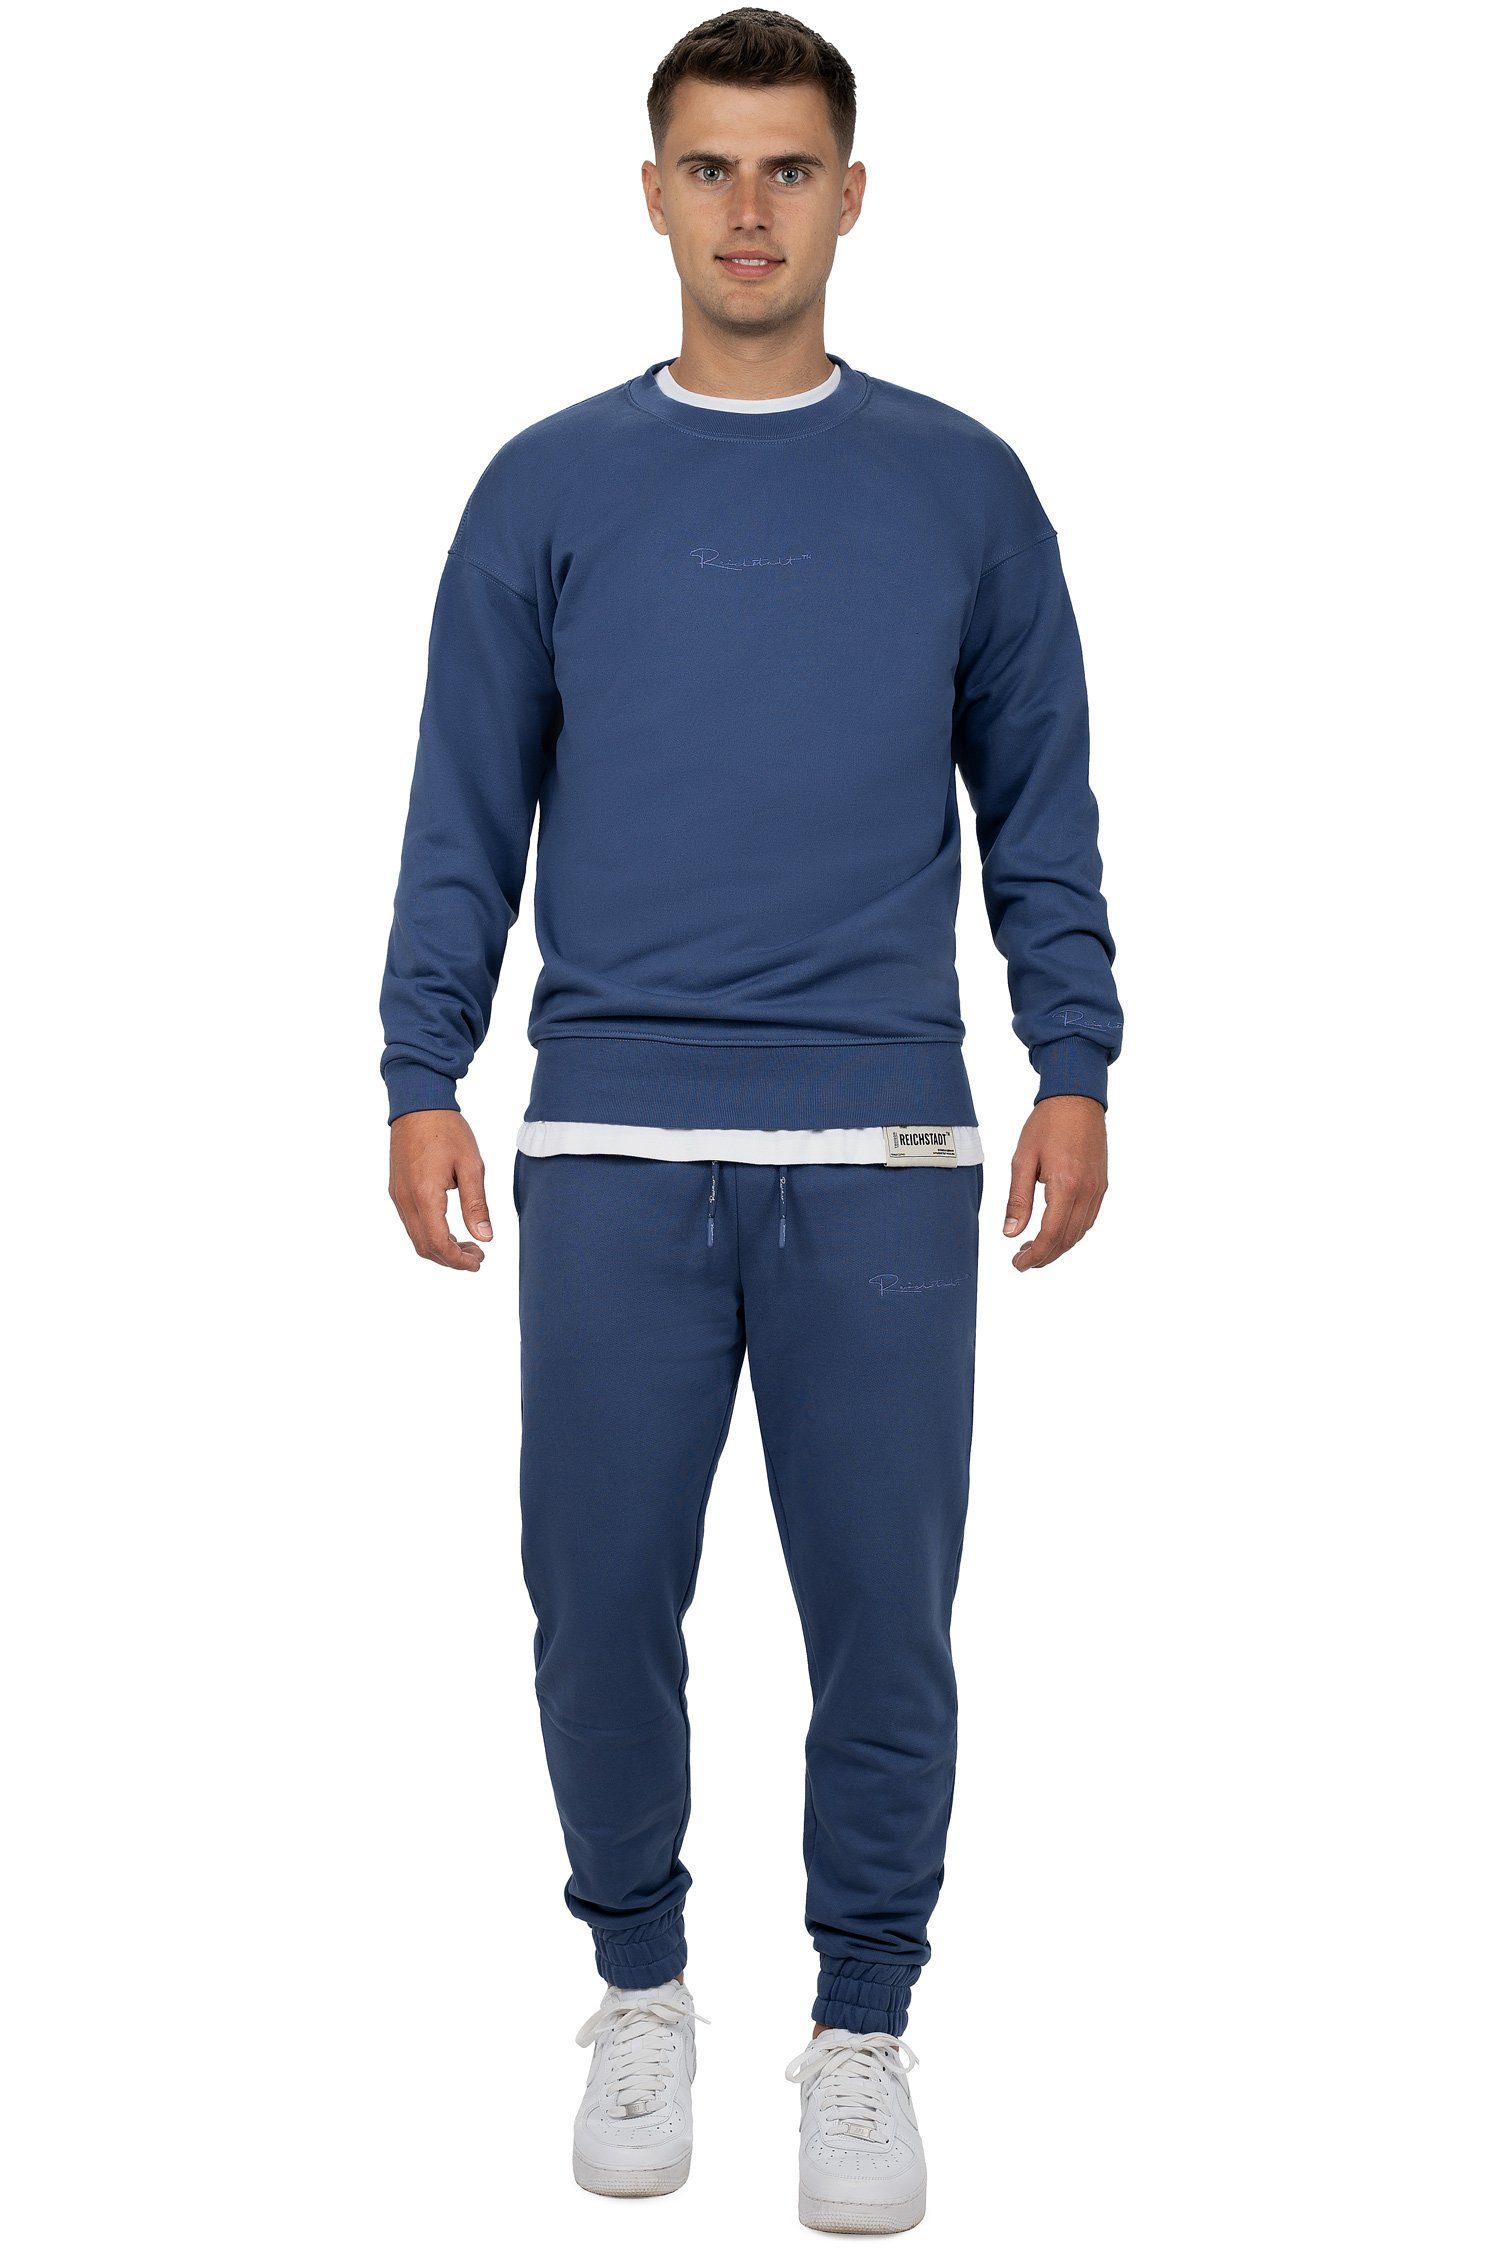 Pullover Dunkelblau mit Eleganten Basic Sweatshirt 23RS037 Casual (1-tlg) Reichstadt Details